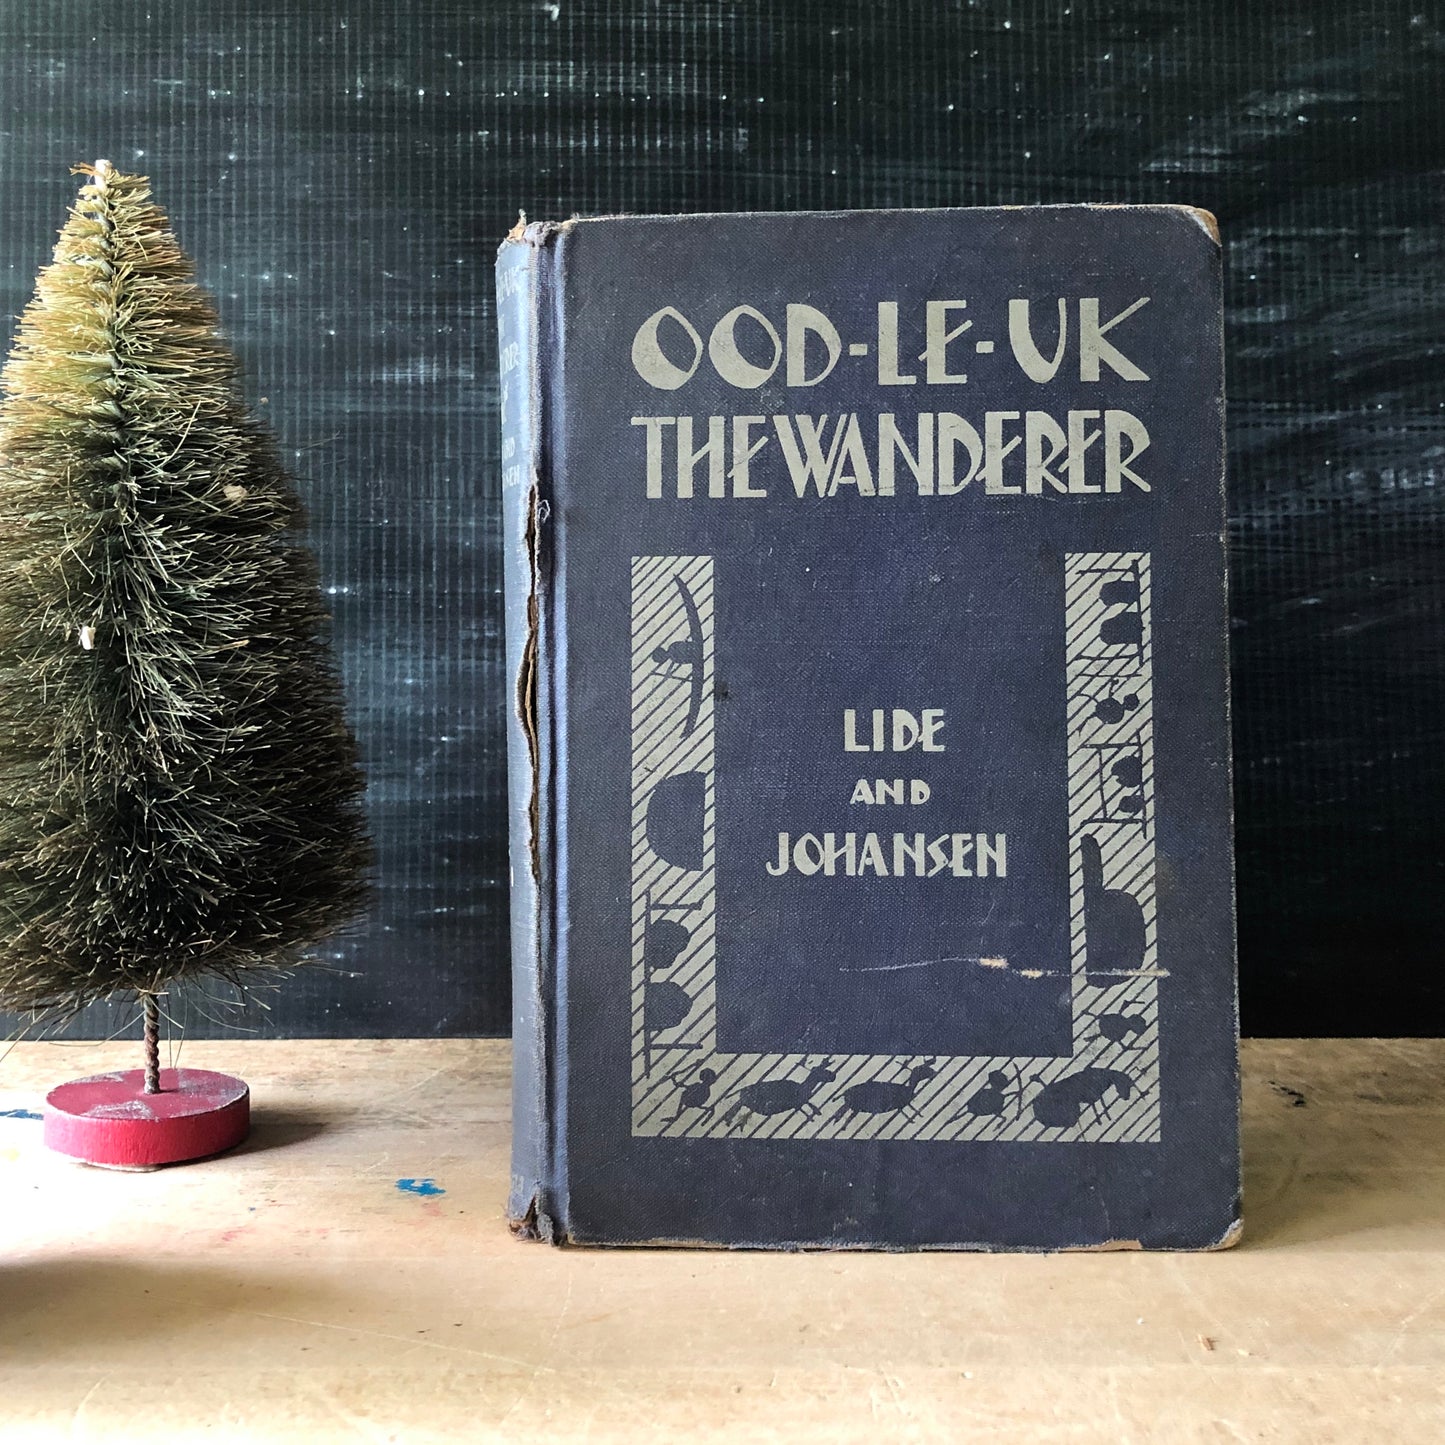 Vintage Children's Book Ood-Le-Uk The Wanderer (1930)